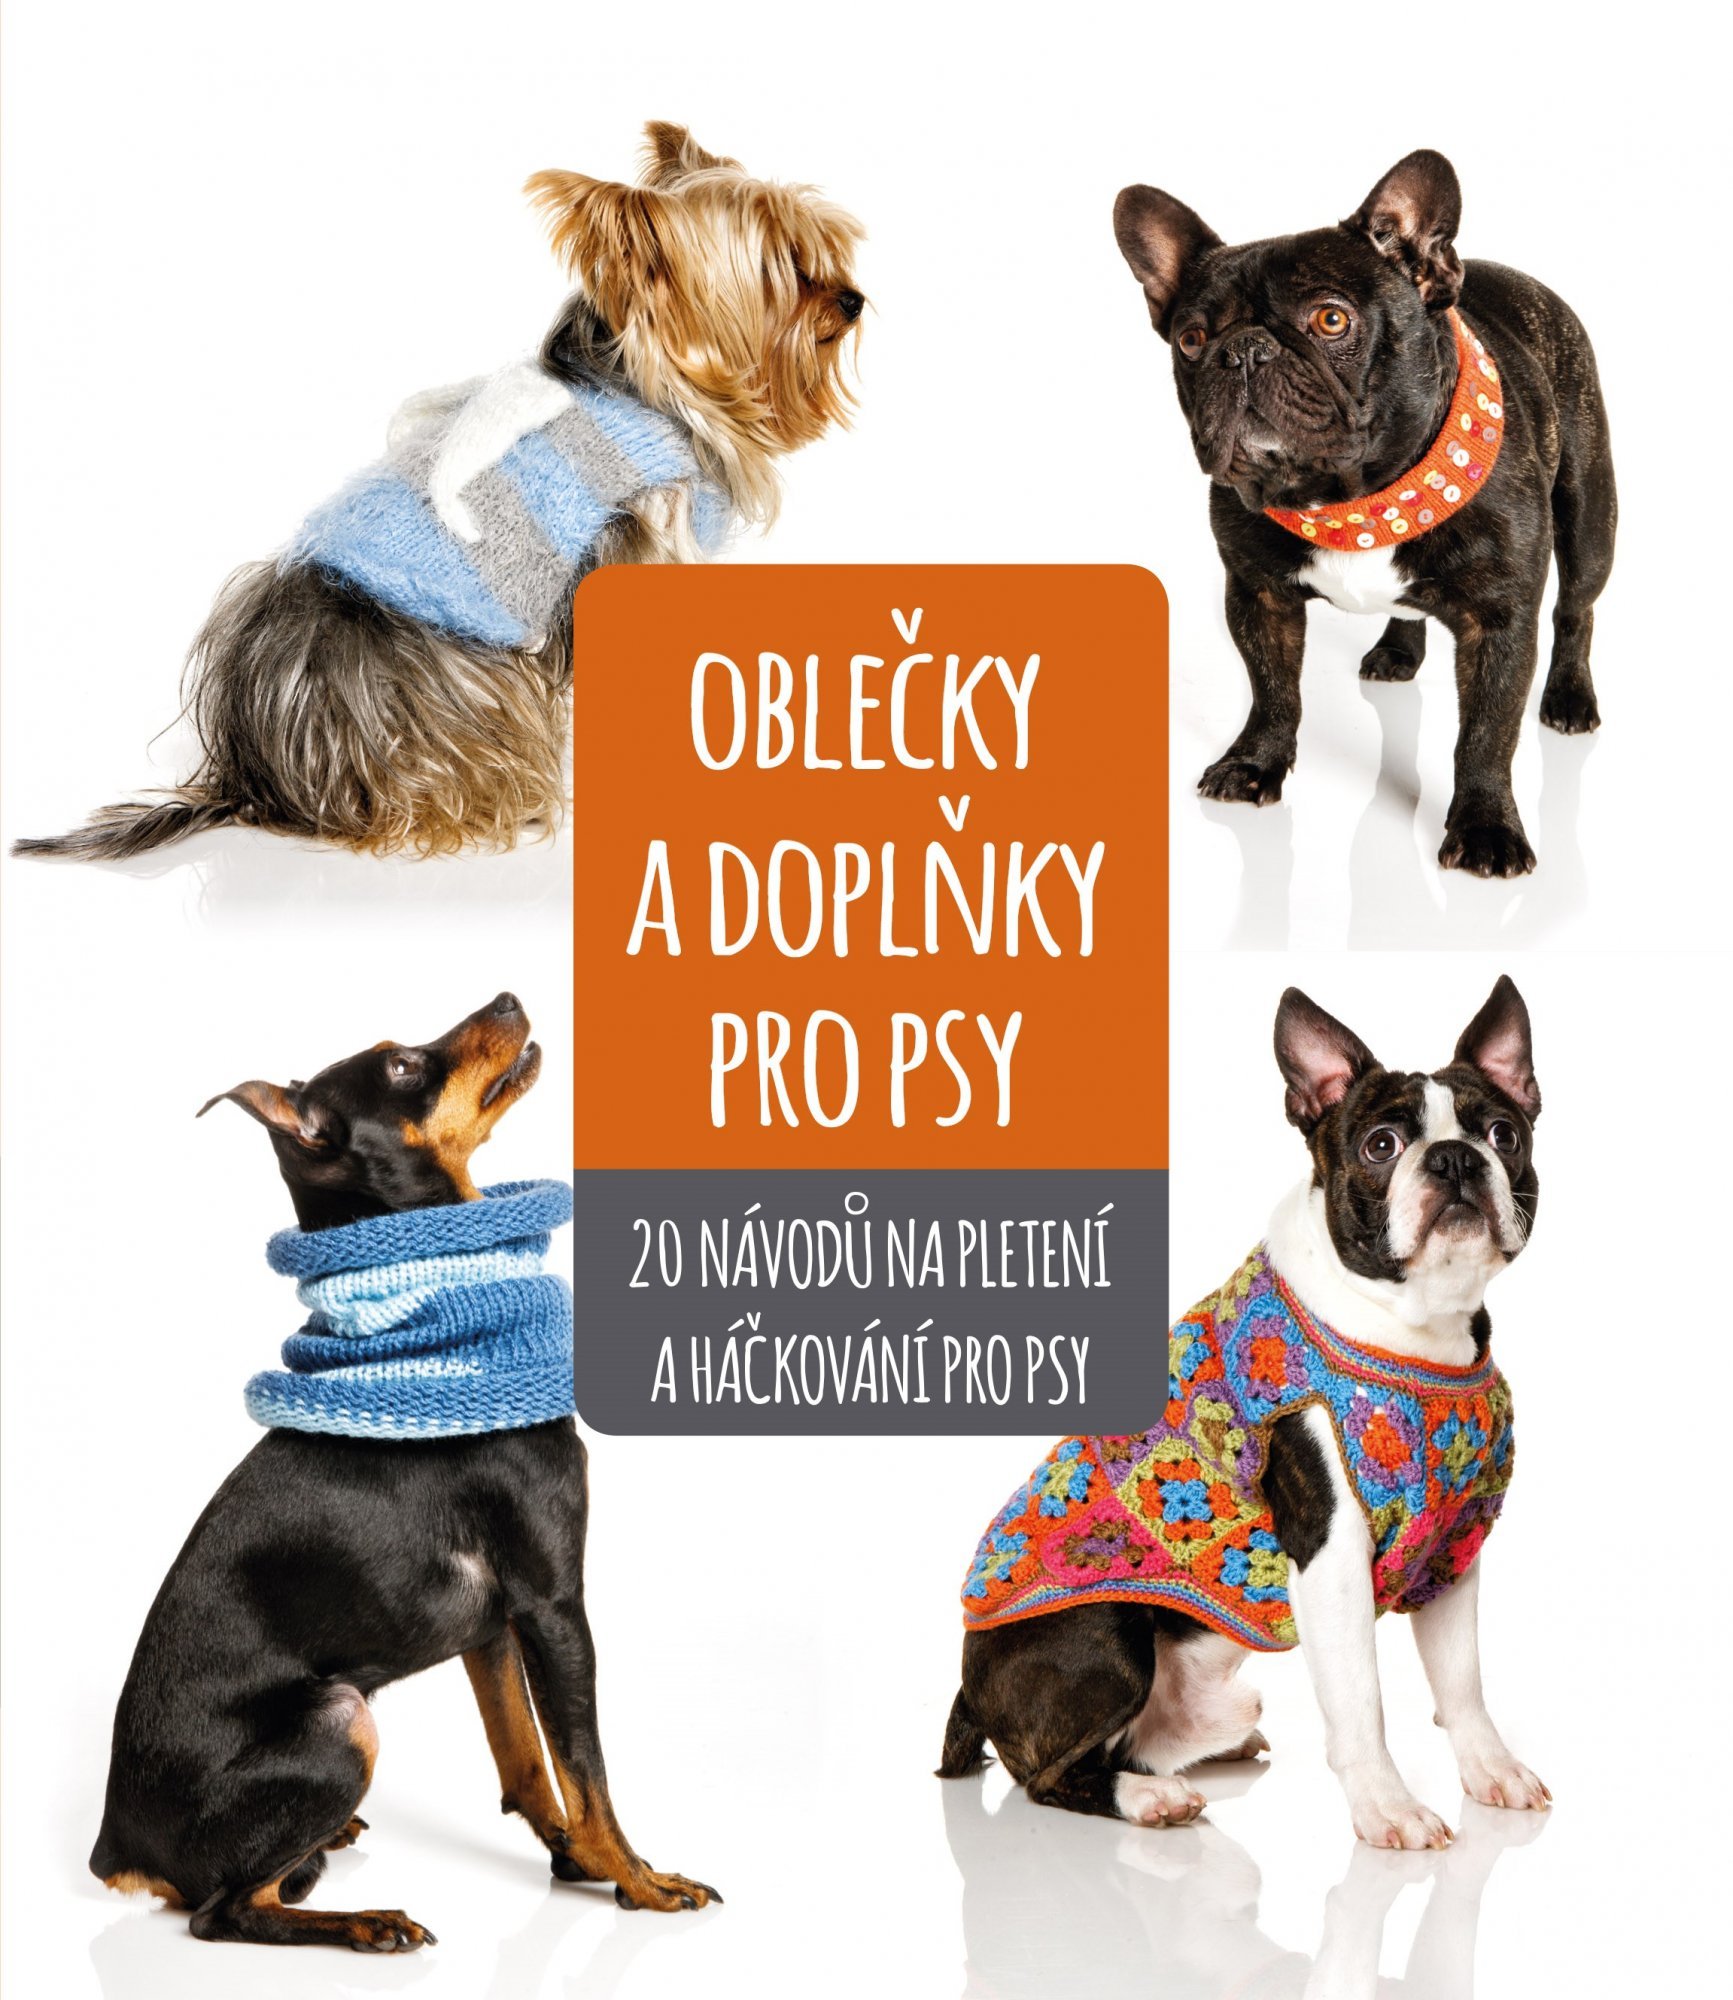 Oblečky a doplňky pro psy - autorů kolektiv